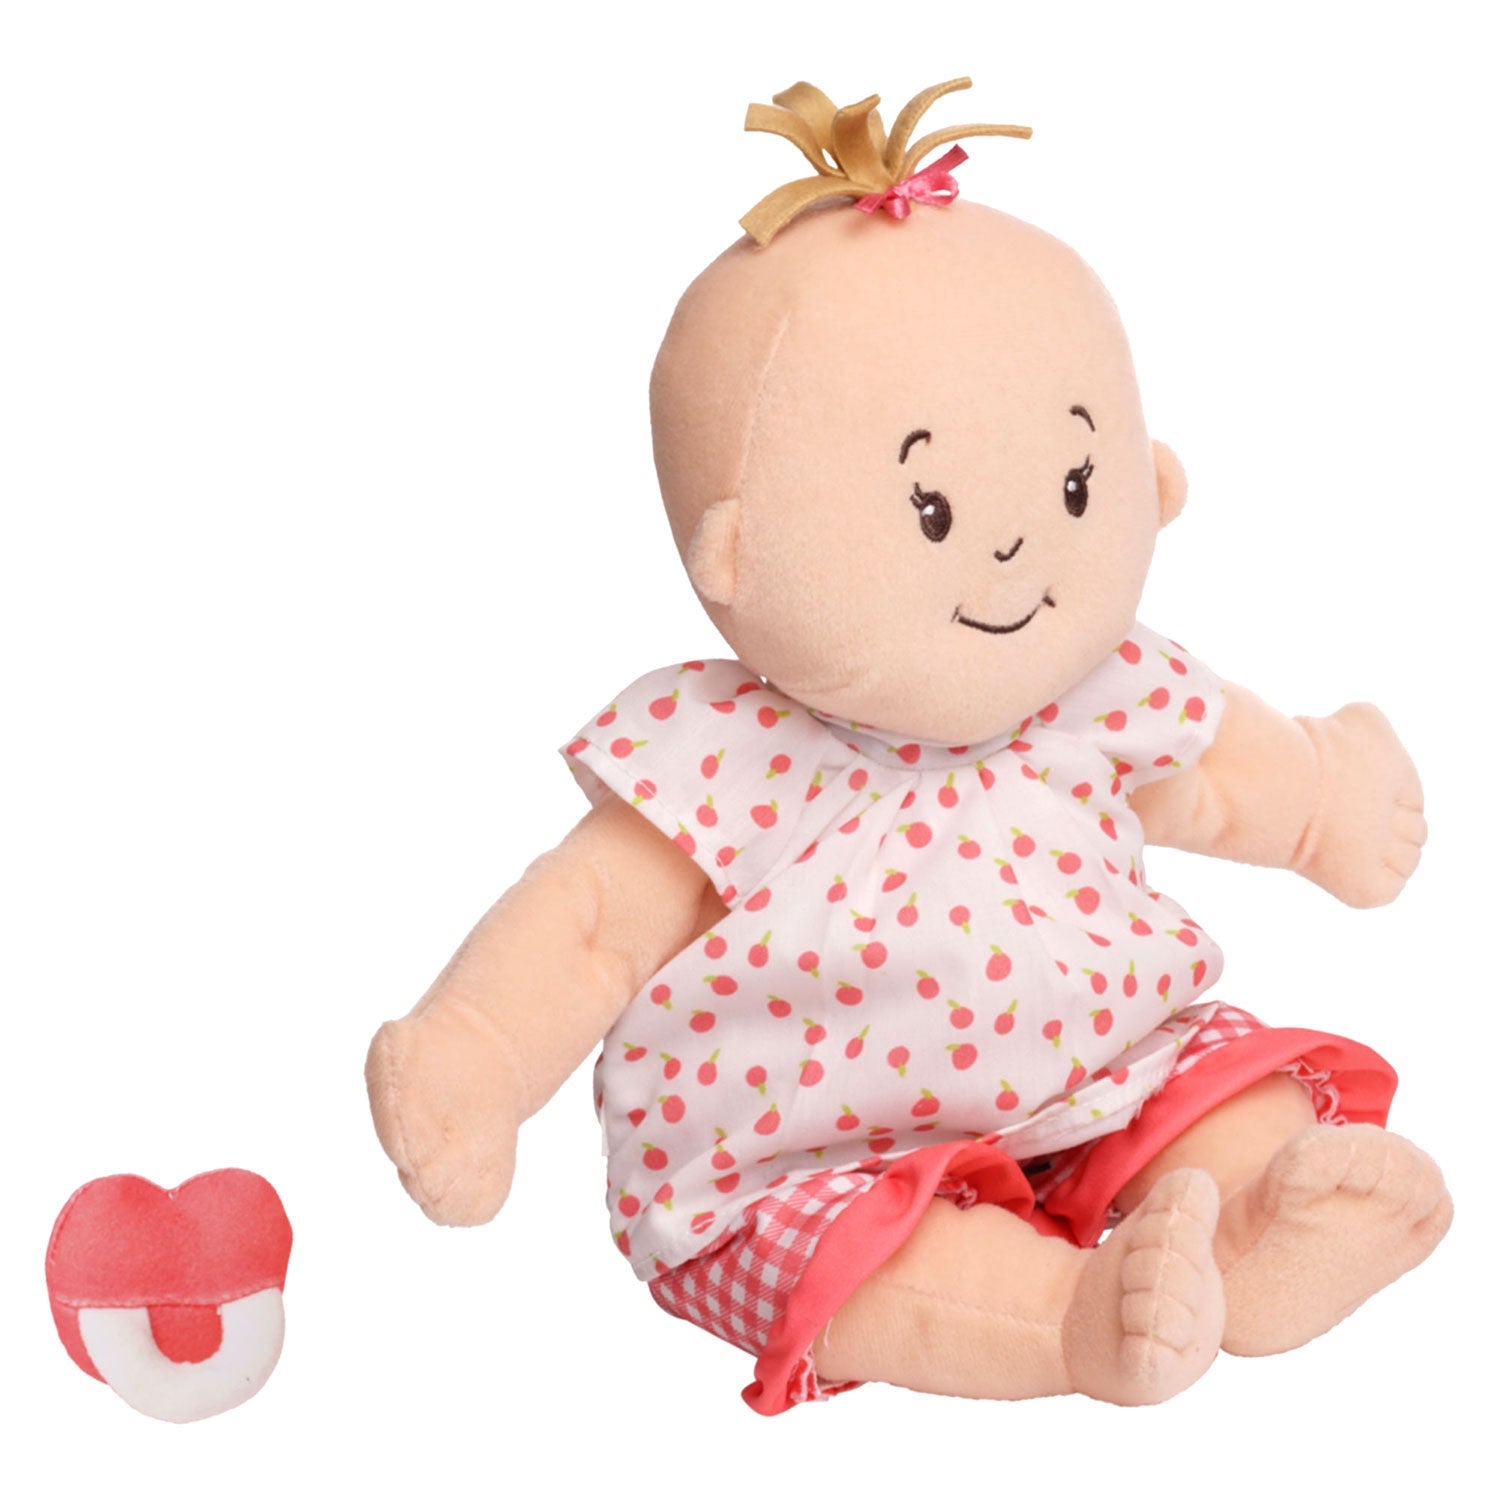 Manhattan Toy Baby Stella Peach Doll with Light Brown Hair Dolls